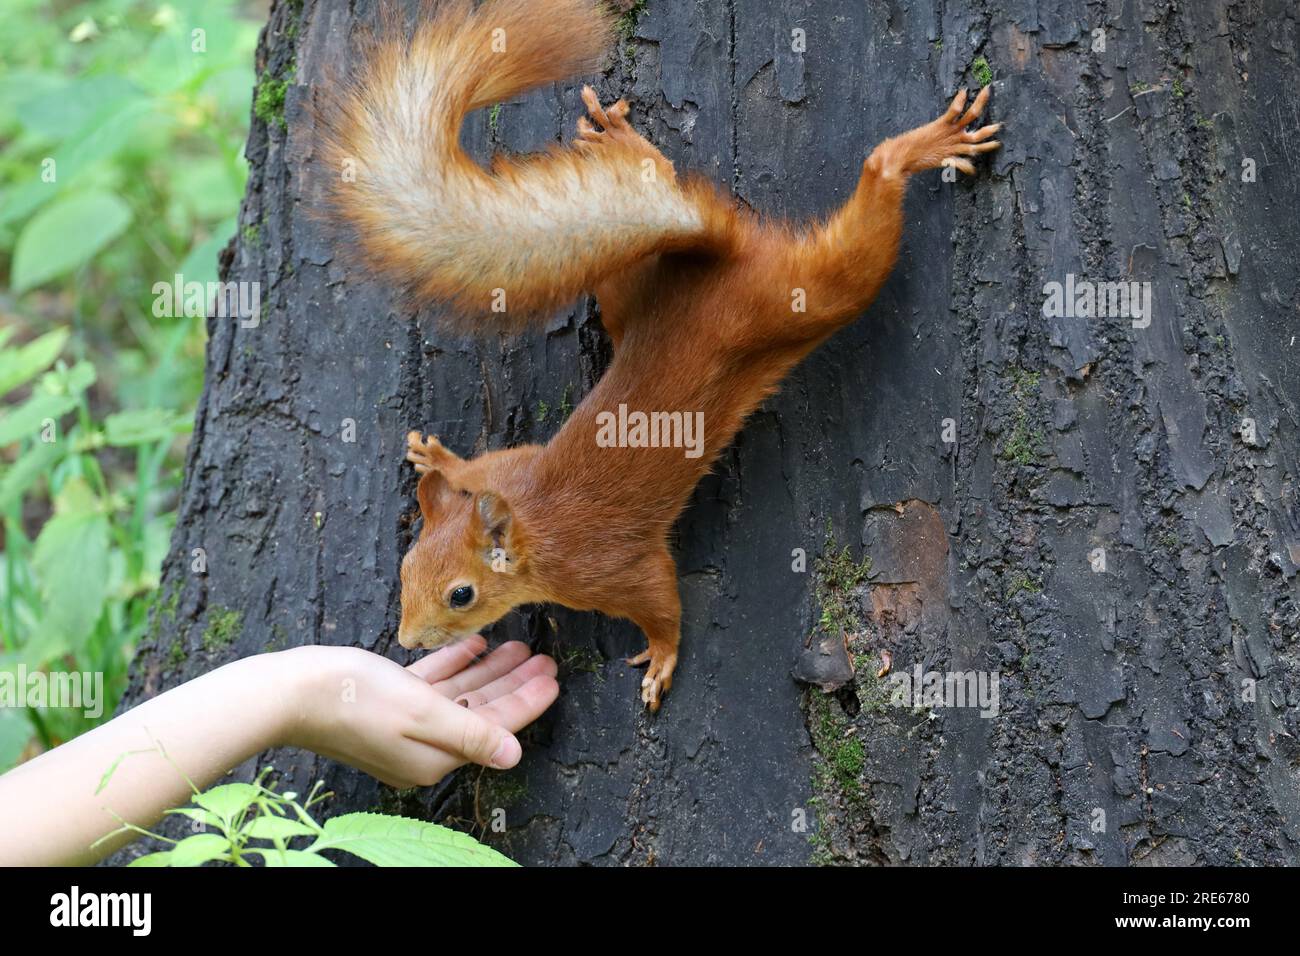 Lo scoiattolo prende una noce da una mano umana. Nutrire animali selvatici in un parco estivo, scoiattolo affamato sul tronco degli alberi, fiducia e cura Foto Stock